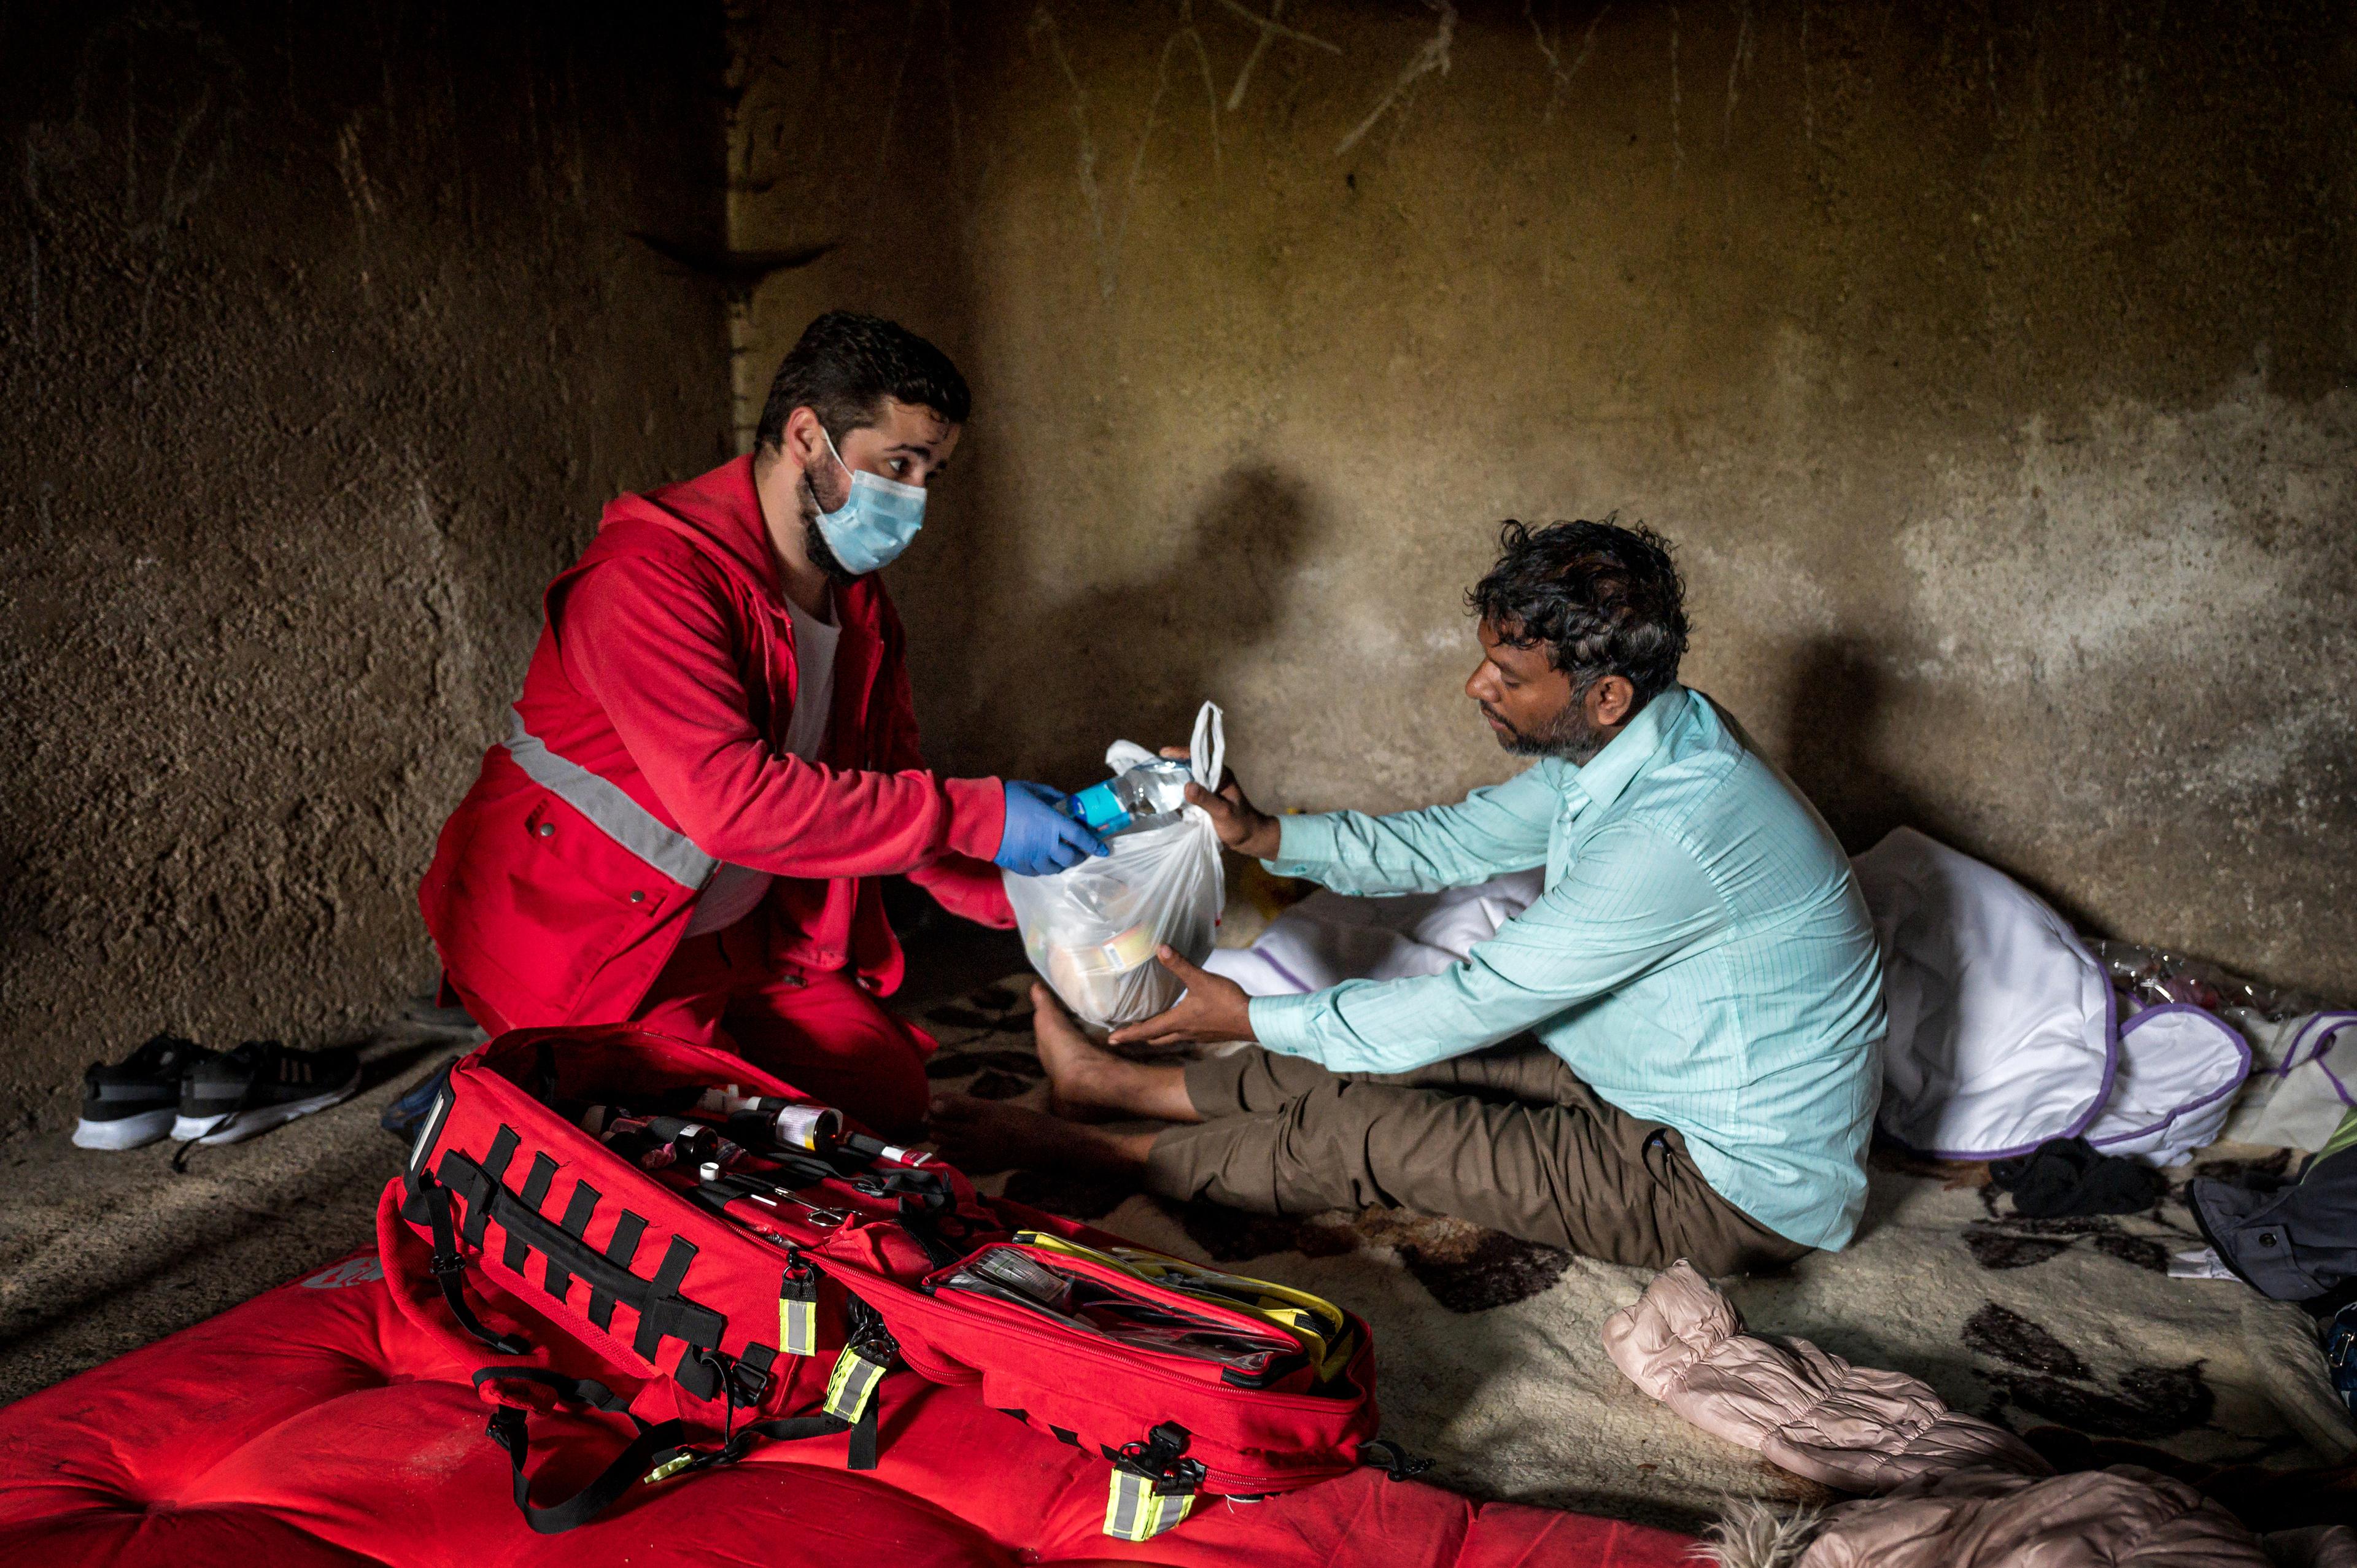 Das Bild zeigt einen Mitarbeiter der Rotkreuzbewegung in roter Uniform, der einem sitzenden Mann in einem spärlich möblierten Raum Hilfsgüter übergibt, was einen Einsatz vor Ort oder humanitäre Hilfe darstellt.